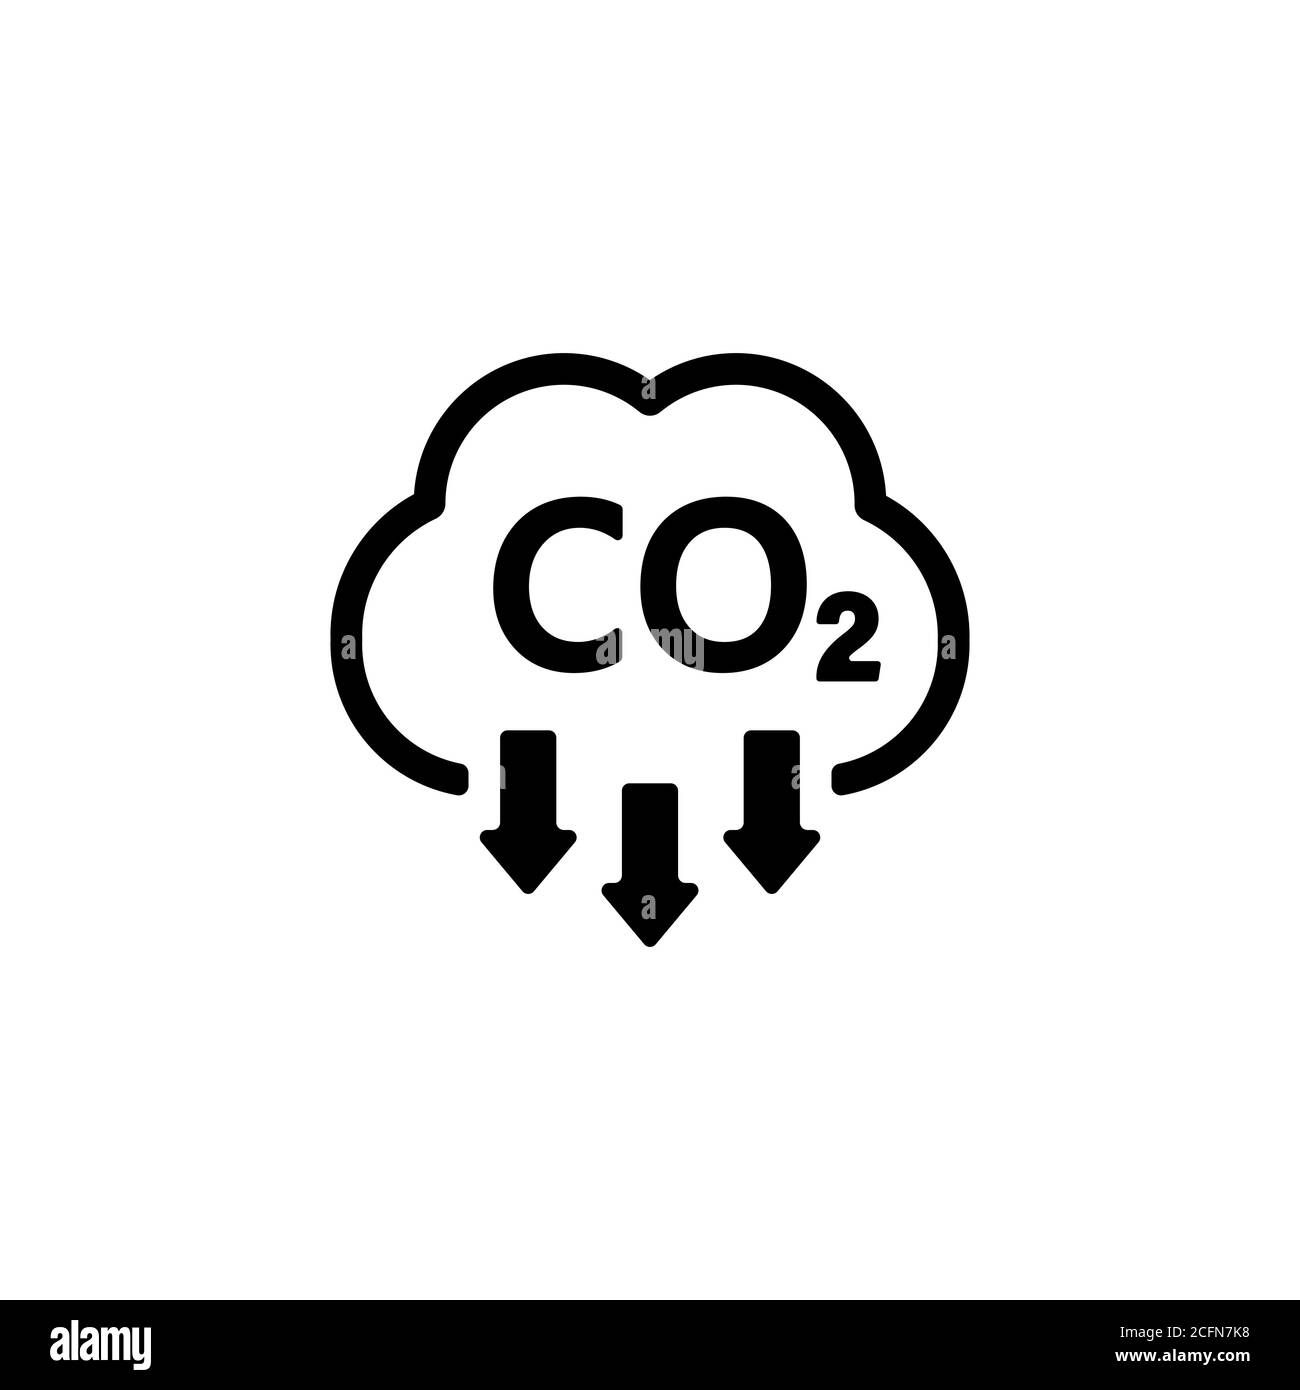 Icona CO2. Segnale di riduzione delle emissioni di anidride carbonica. Vettore su sfondo bianco isolato. EPS 10 Illustrazione Vettoriale